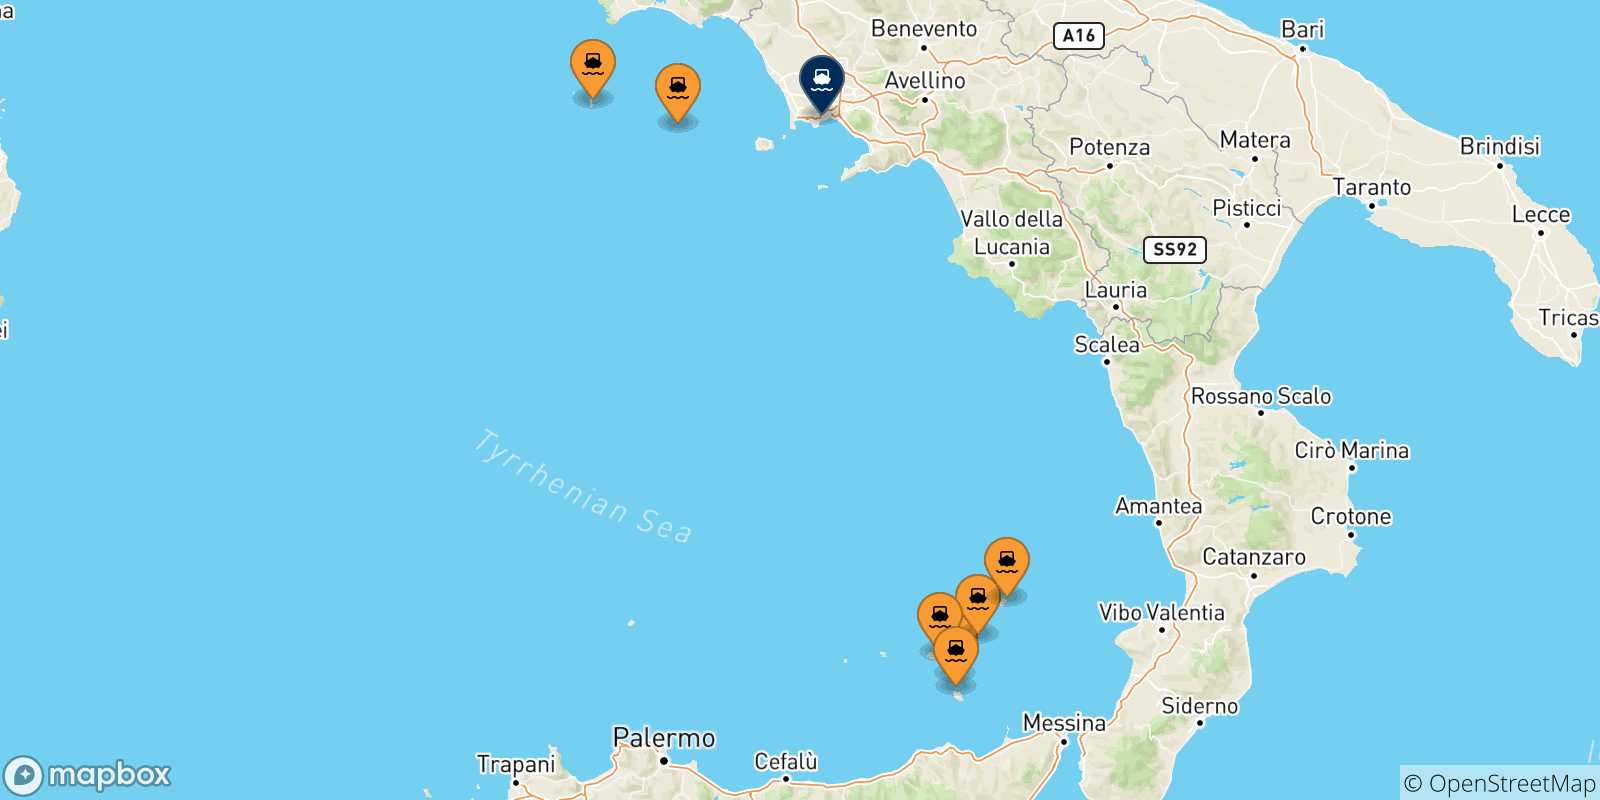 Carte des traversées possibles entre l'Italie et Naples Mergellina